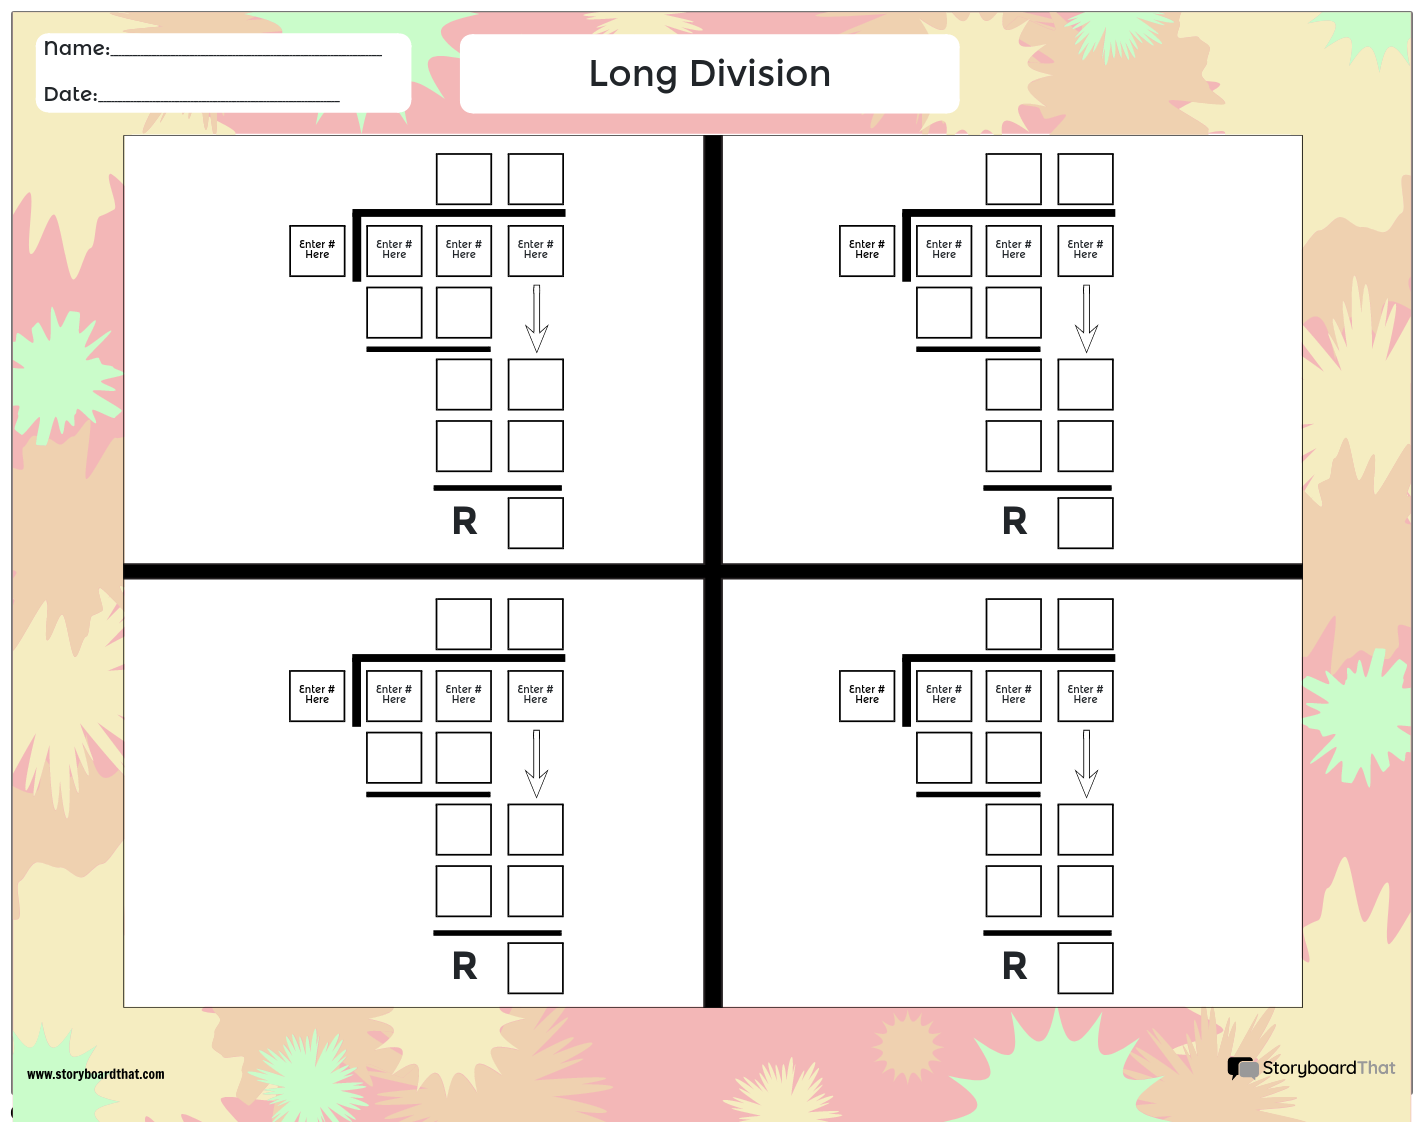 Division Longue 7